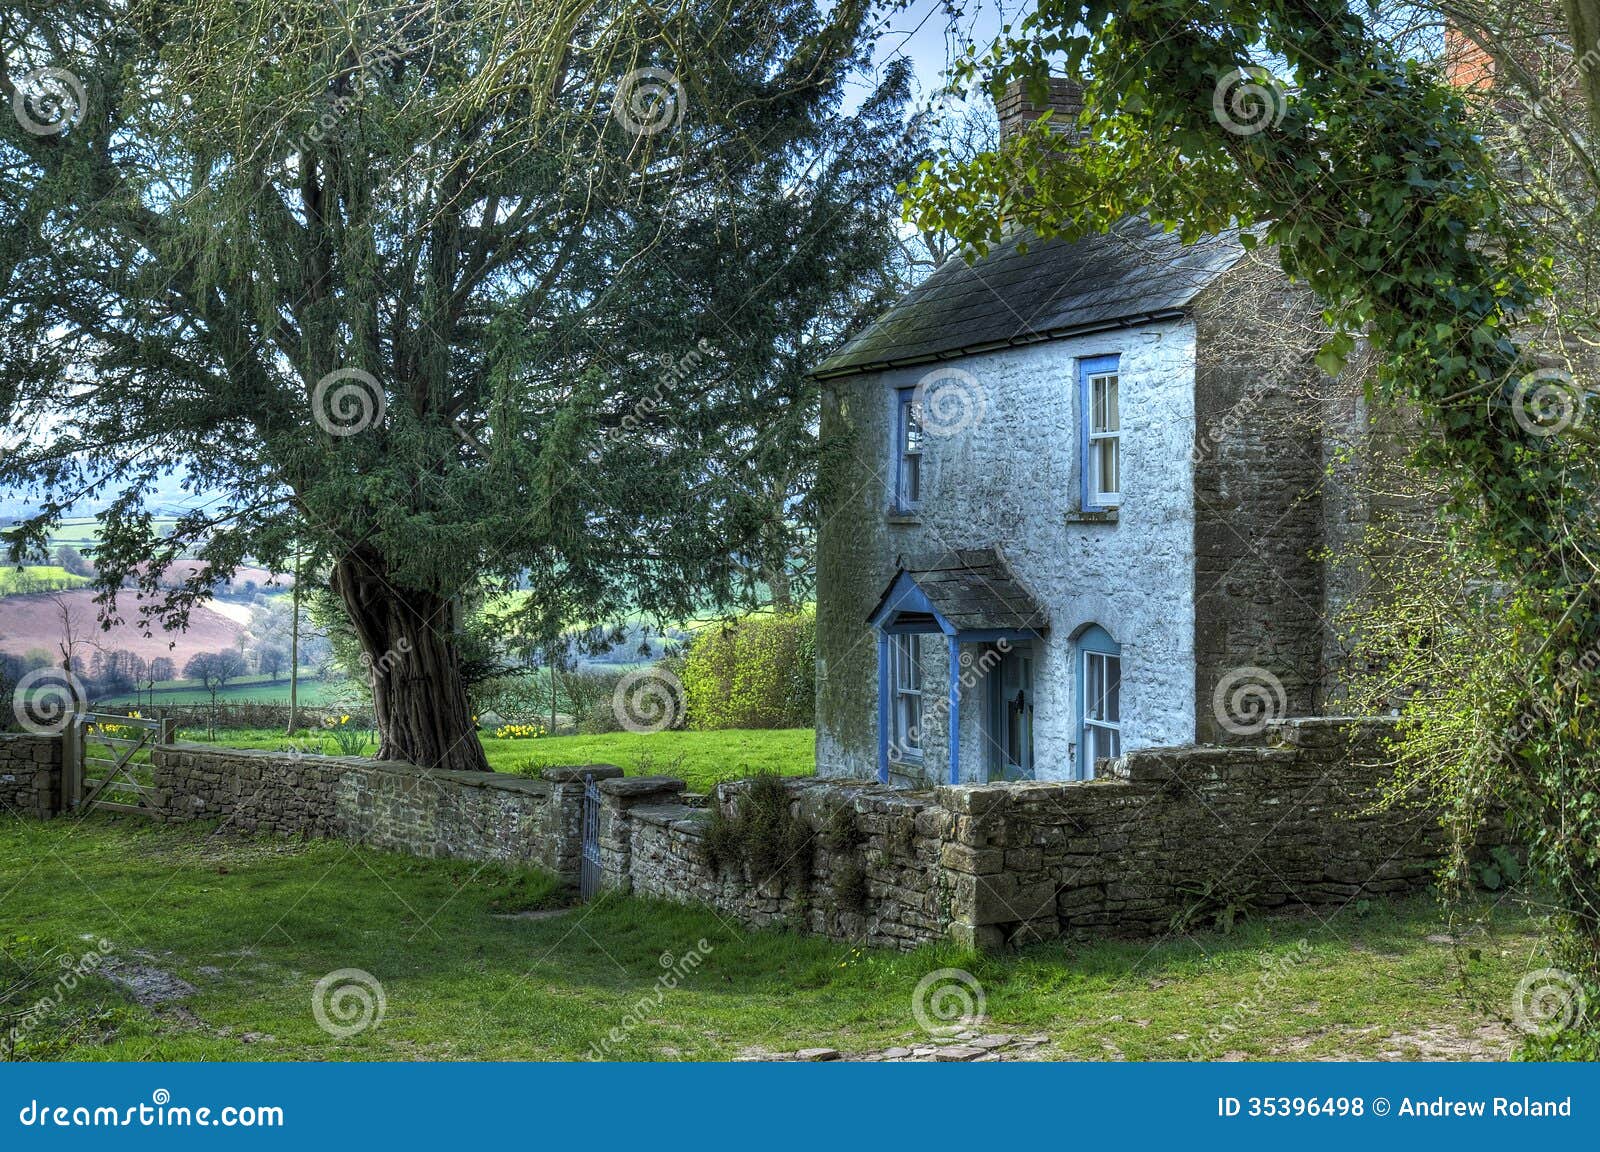 welsh cottage